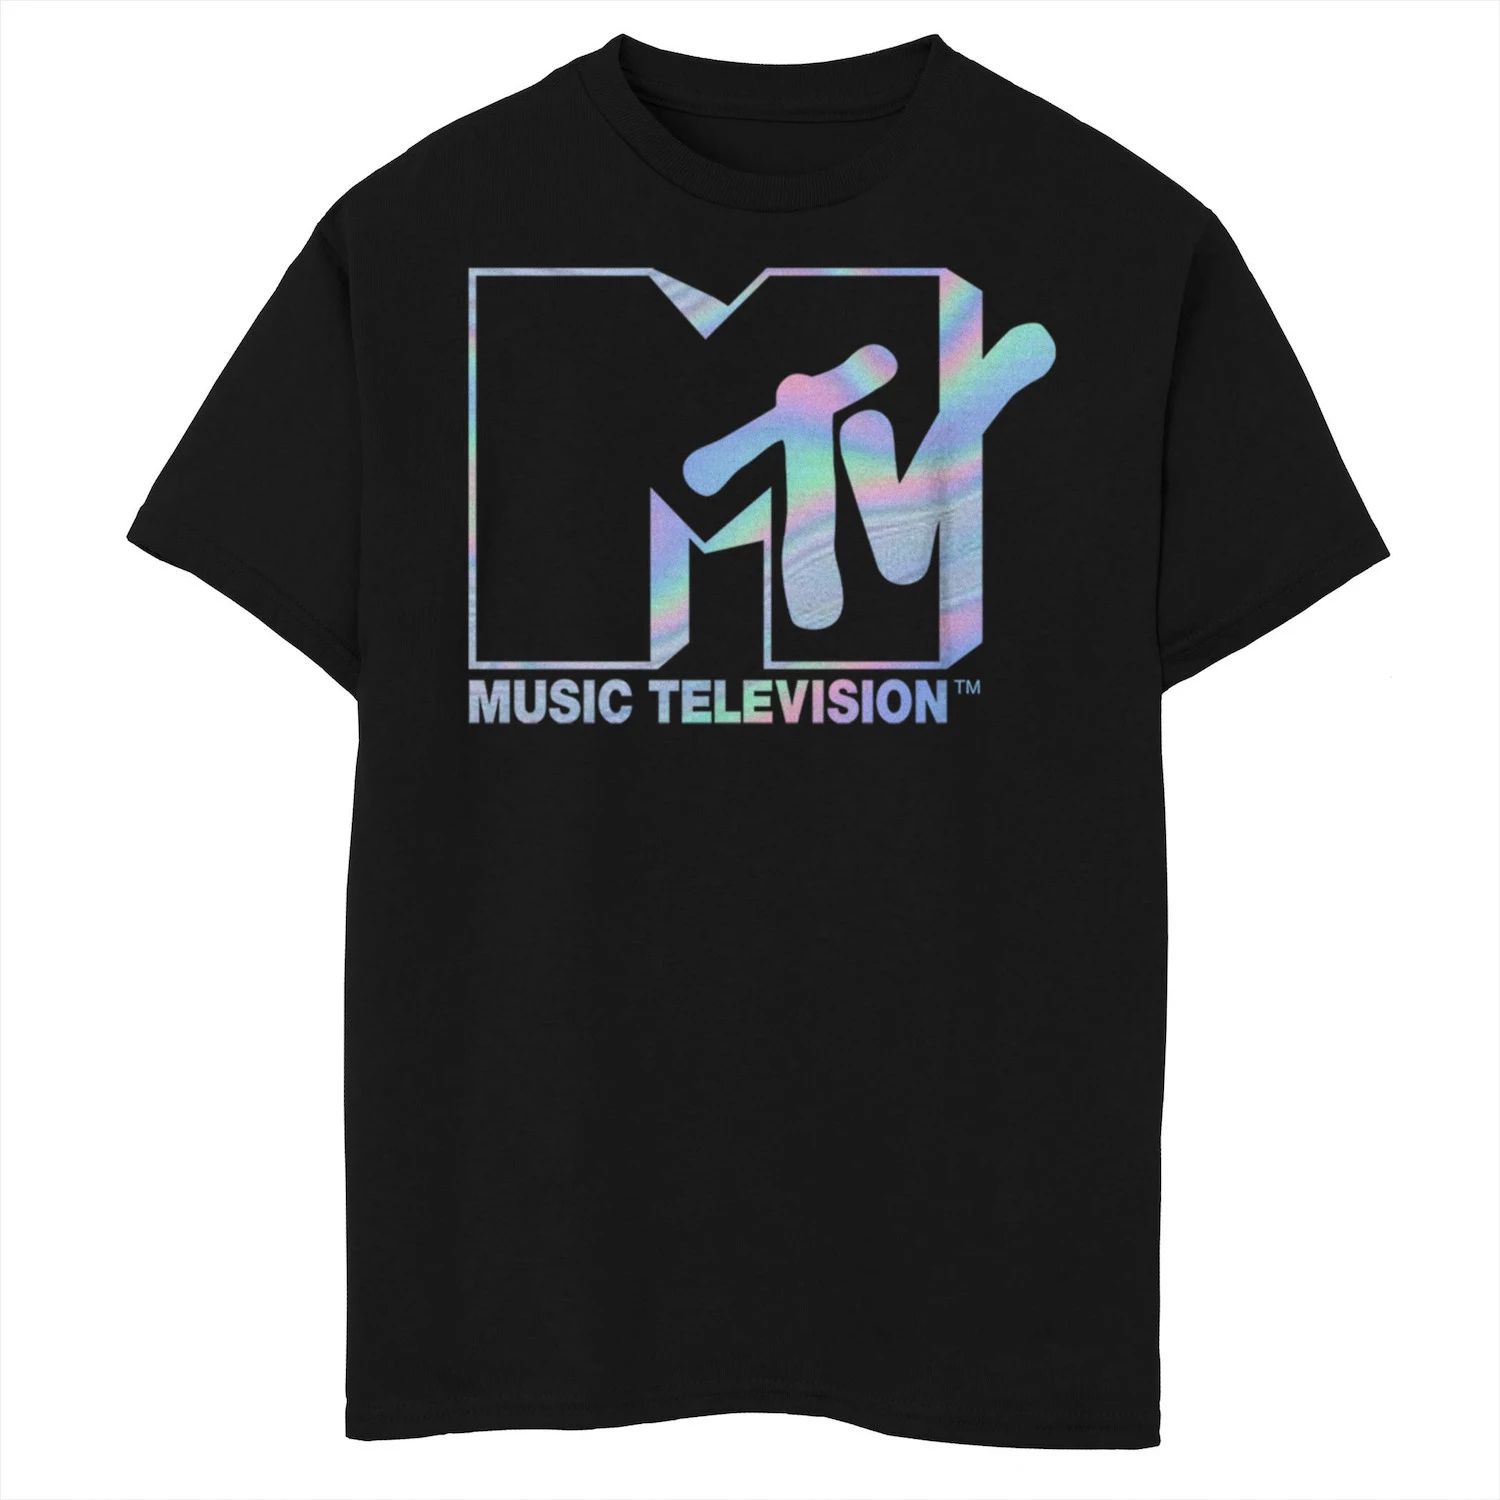 Футболка с голографическим логотипом MTV для мальчиков 8–20 лет Licensed Character футболка с логотипом mtv i want my mtv est 1981 для мальчиков 8–20 лет licensed character